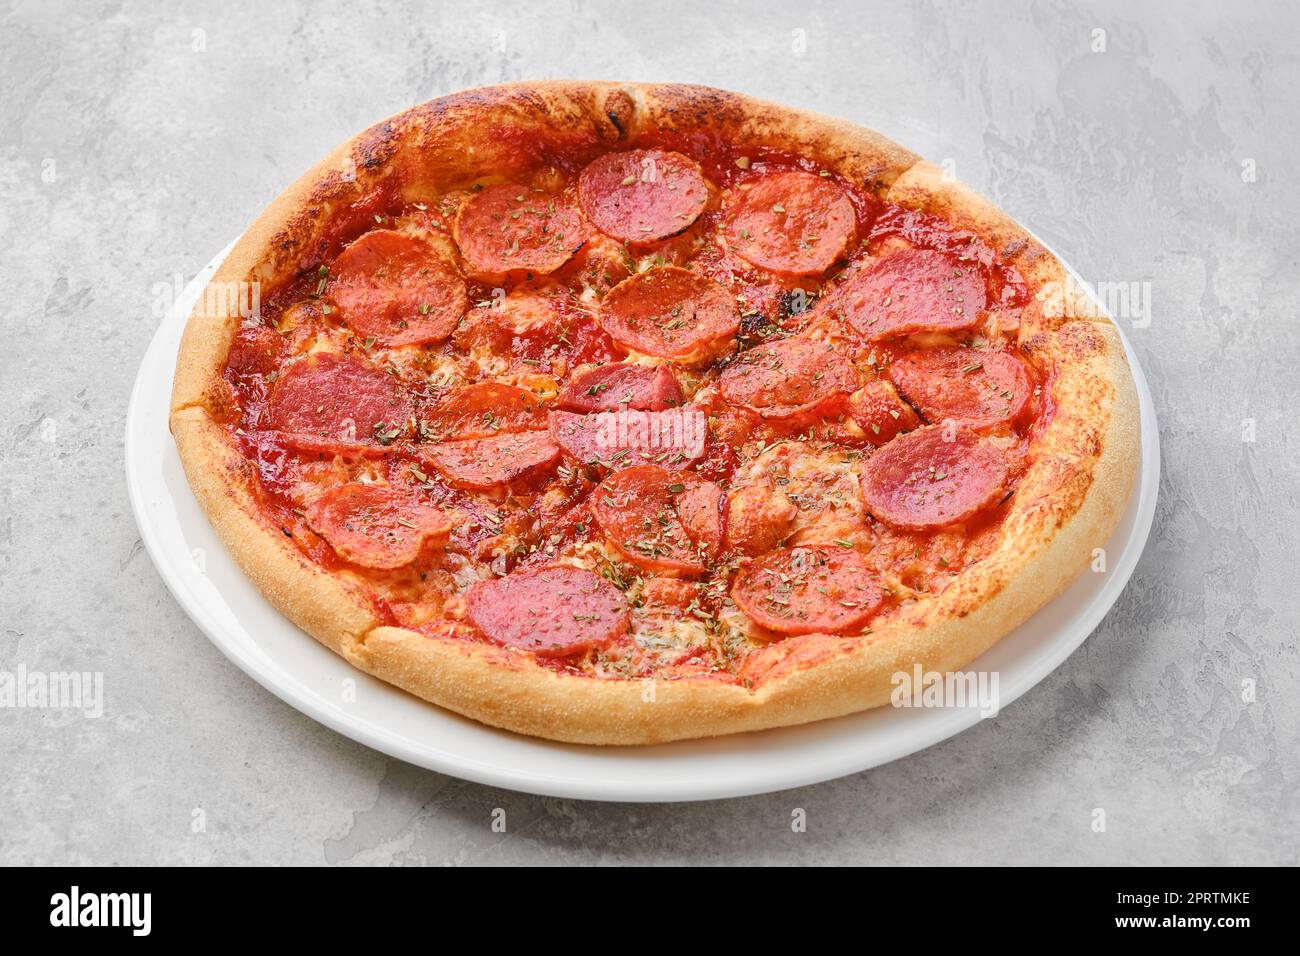 Pizza pepperoni de petite taille Banque D'Images